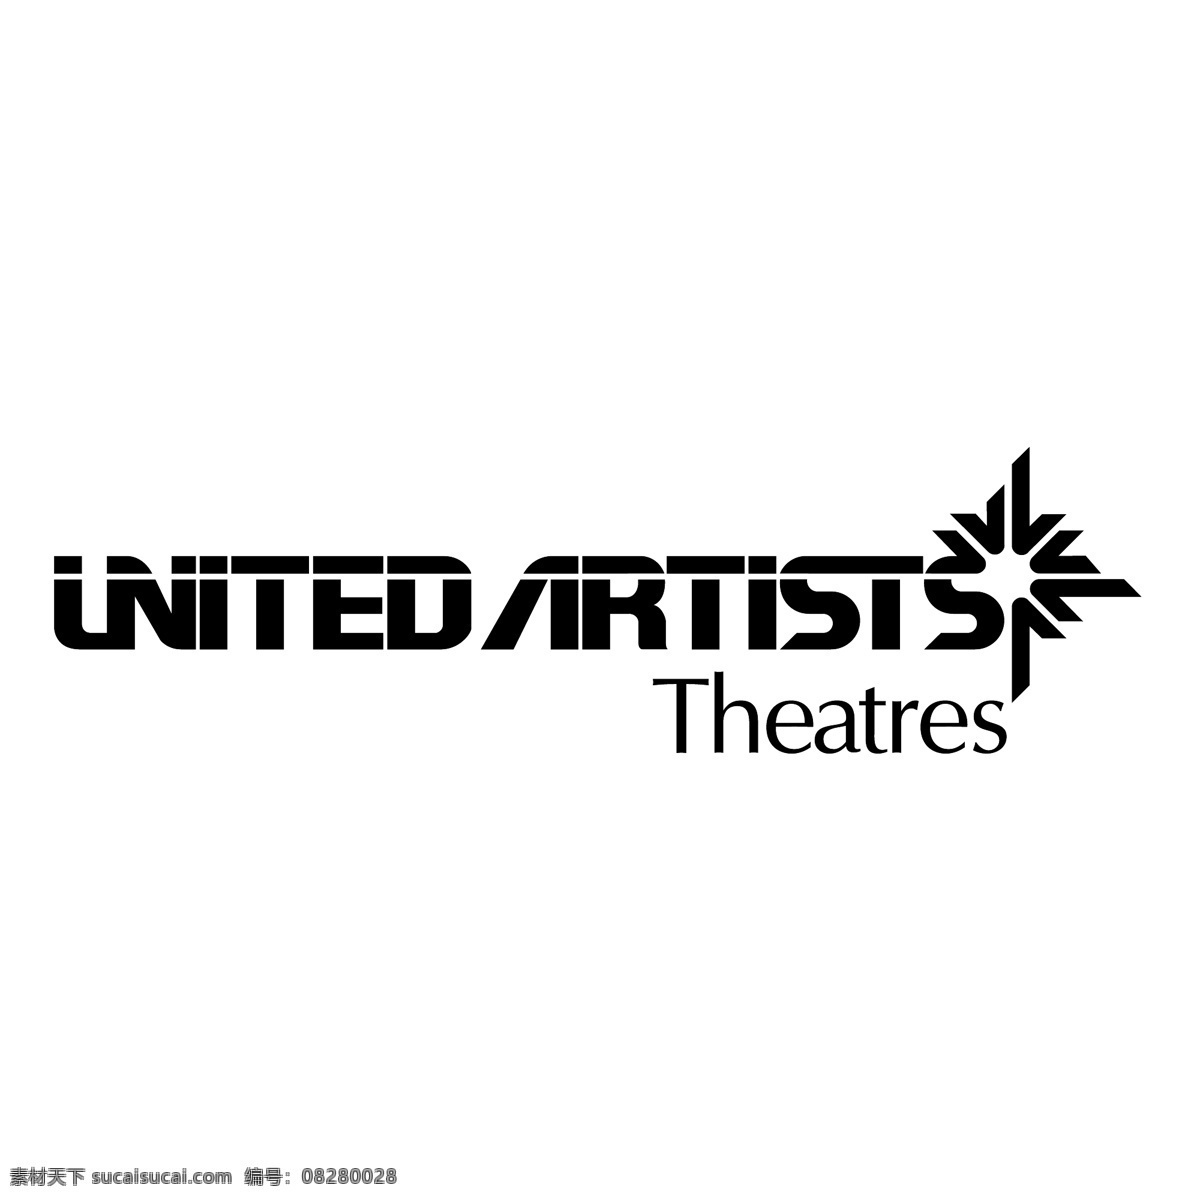 美国 艺术家 剧院 美国艺术家 画家 艺术家的剧院 矢量 标志 向量 联合矢量 免费矢量联合 联合 蓝色